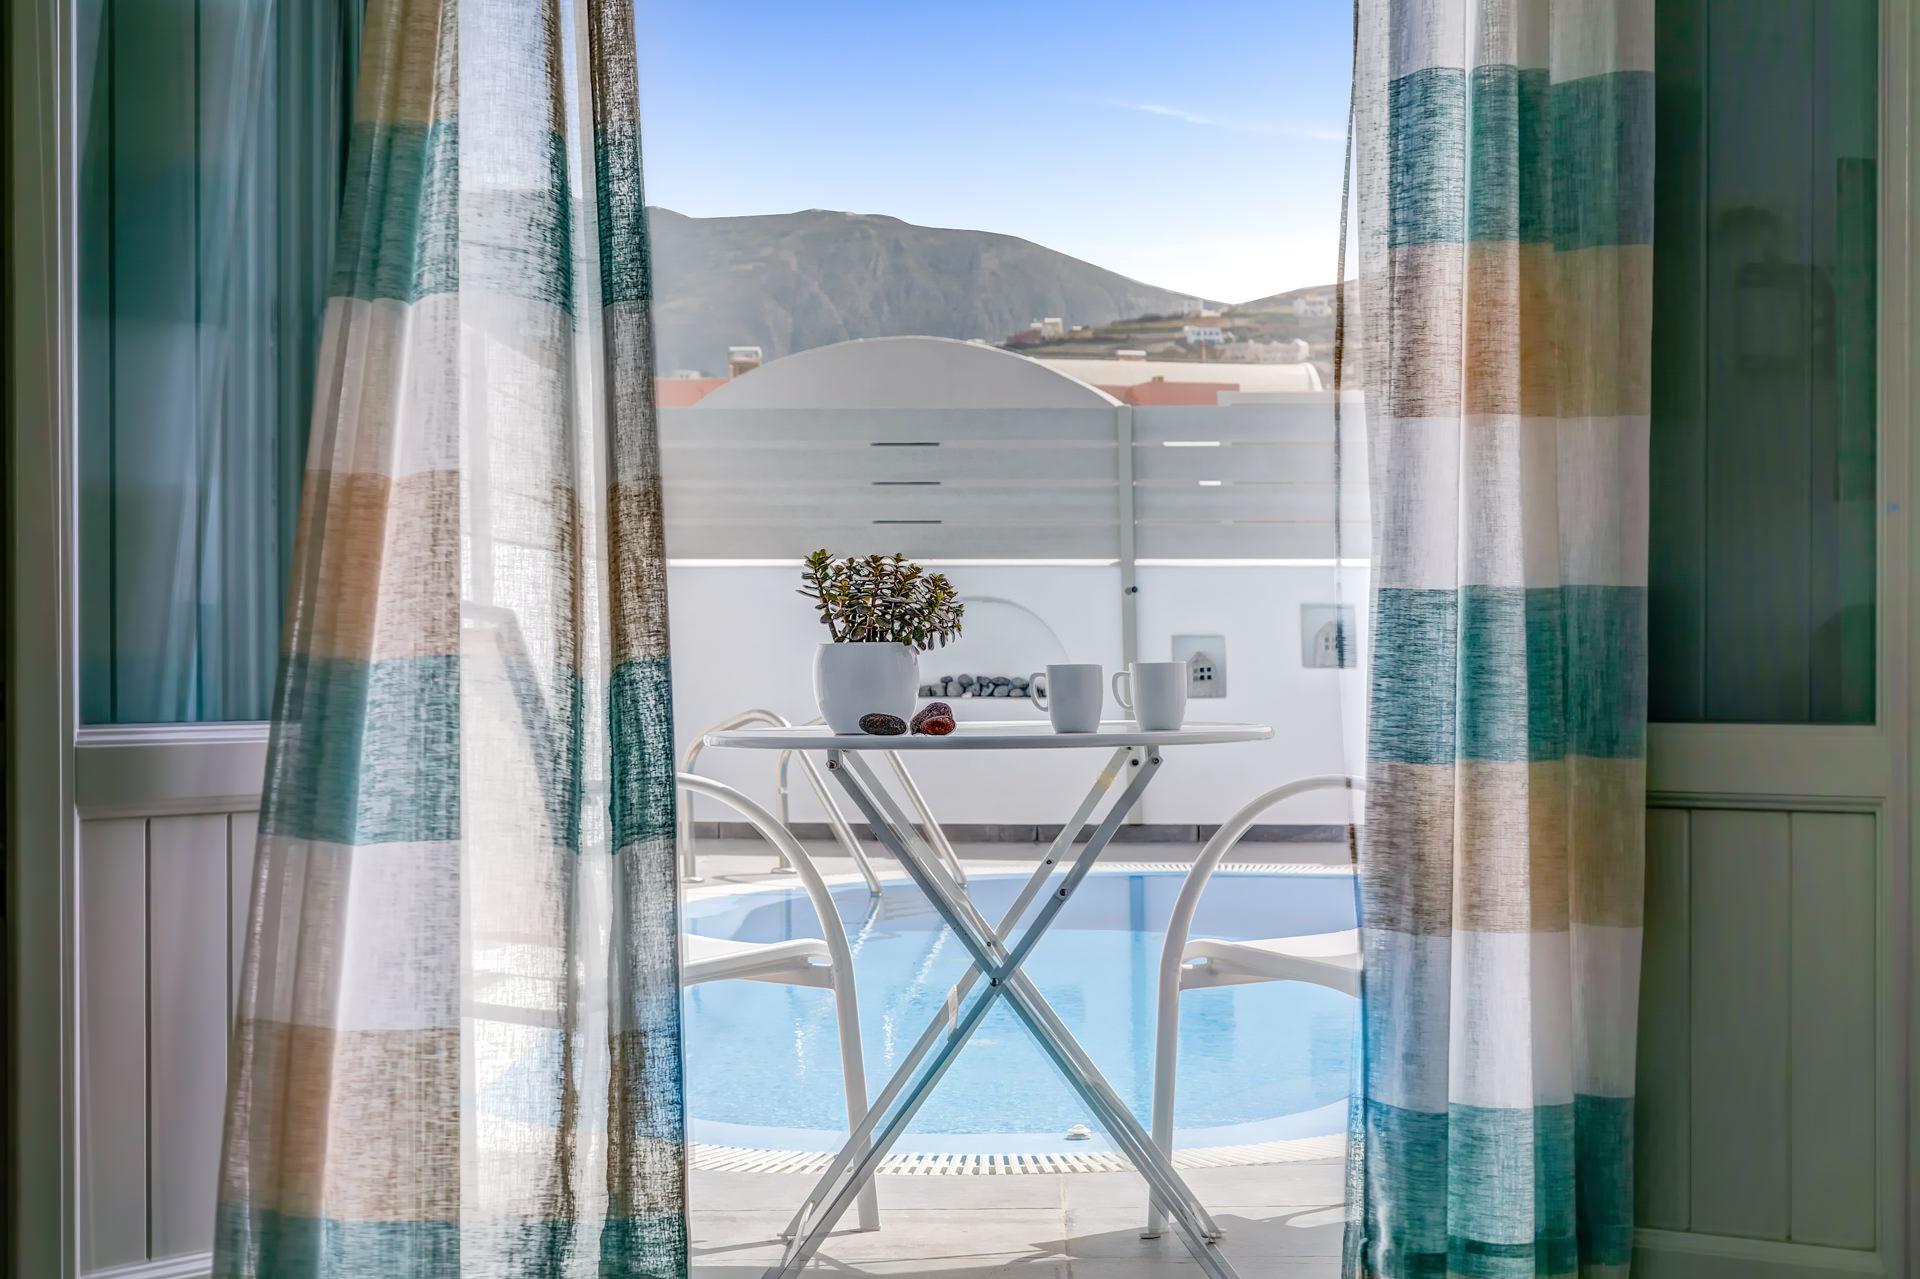 Blue Senses Villas. Suites et Villas de luxe à Santorin